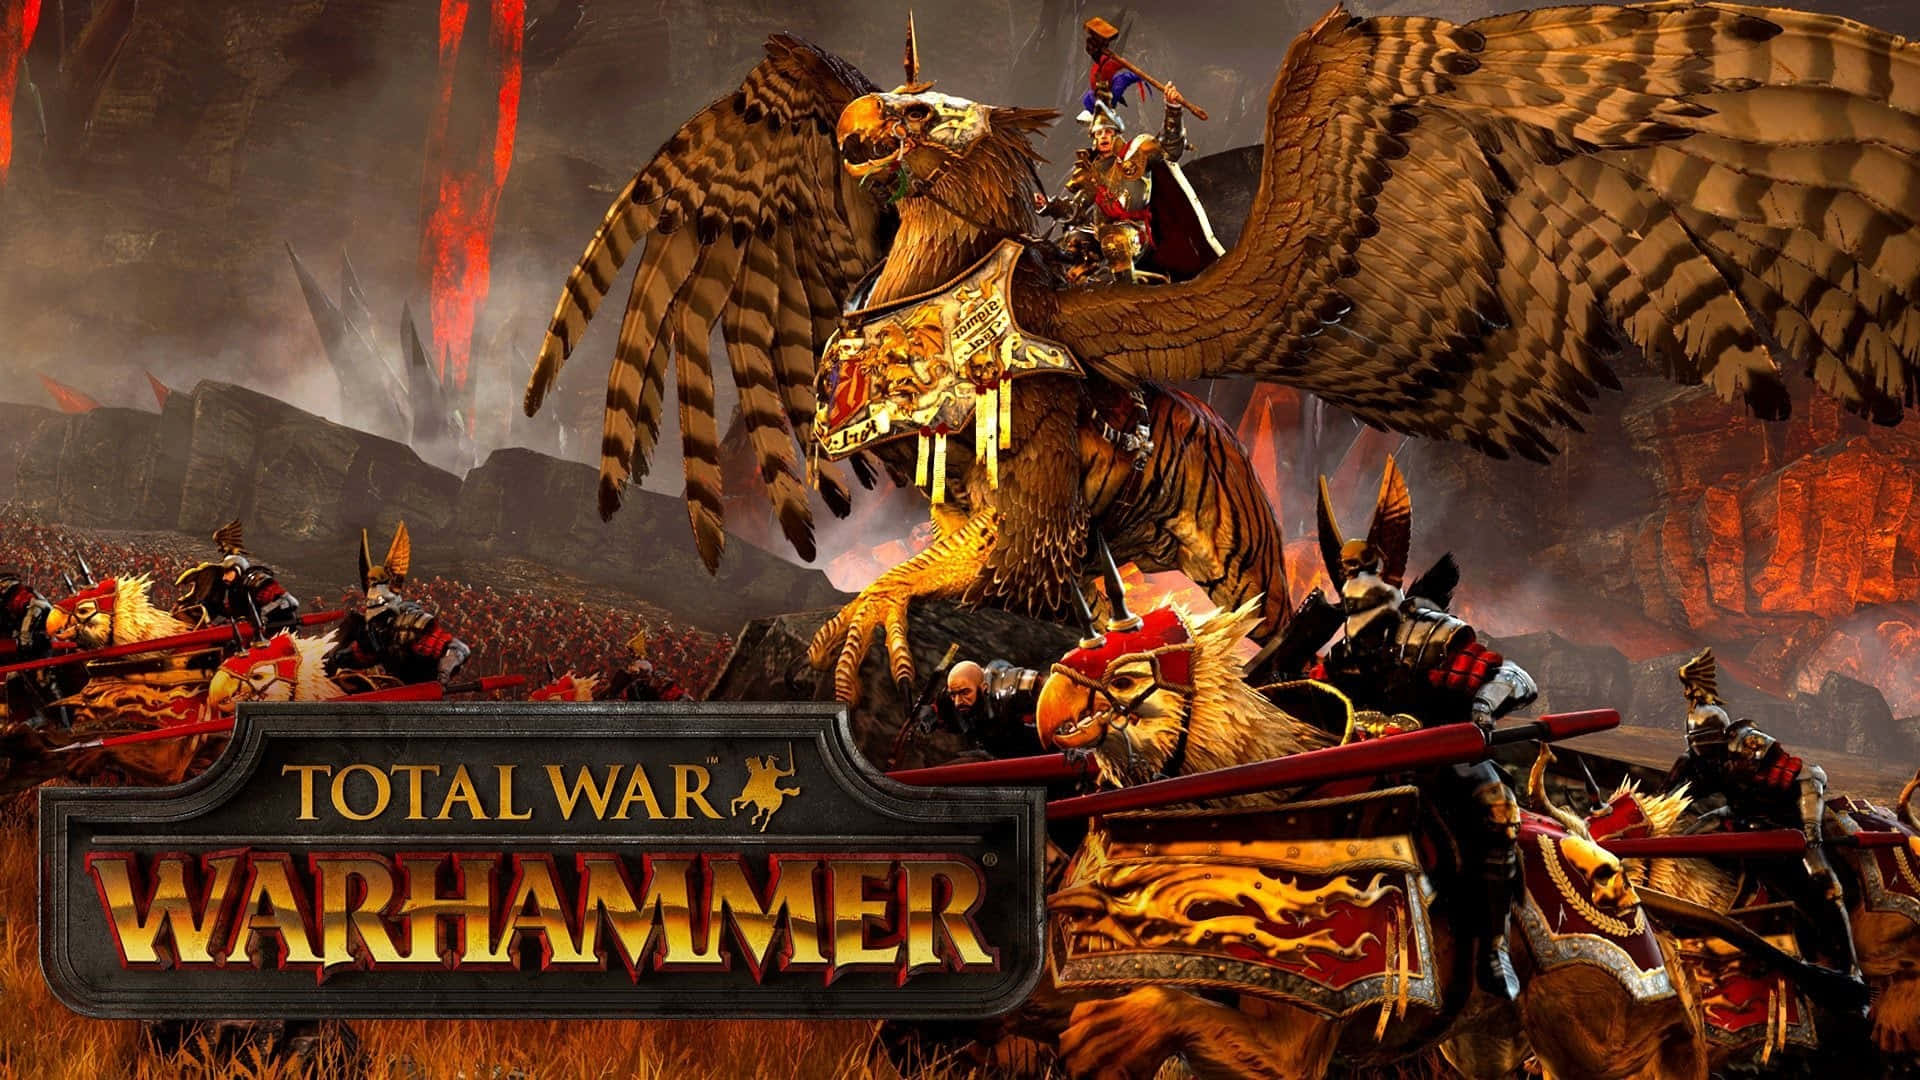 Upplevdet Forntida Kriget Mellan Kaos Och Ordning Med Bästa Total War Warhammer.